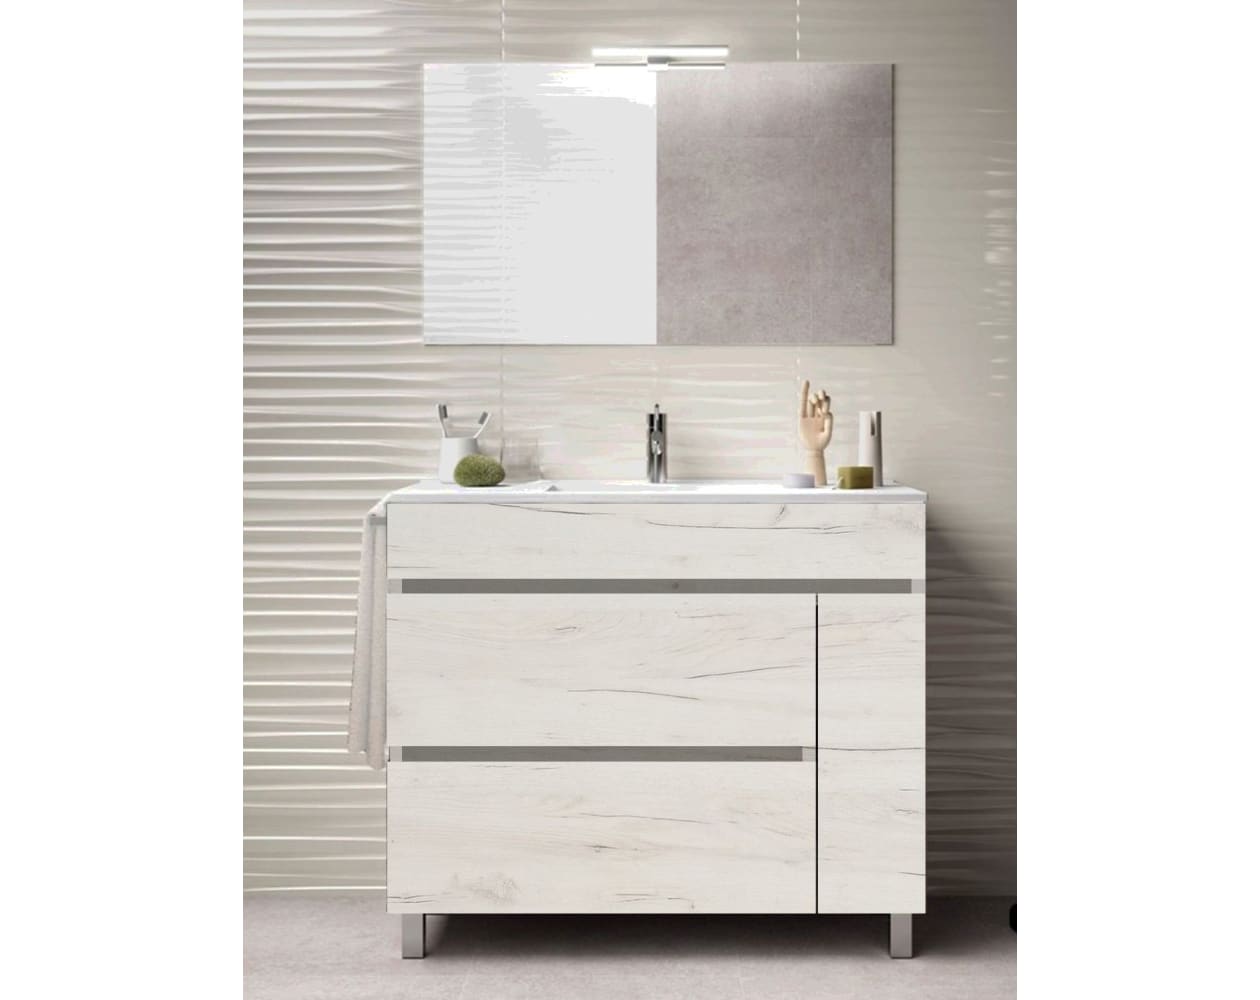 mueble de baño barato con espejo en color blanco , pequeño.